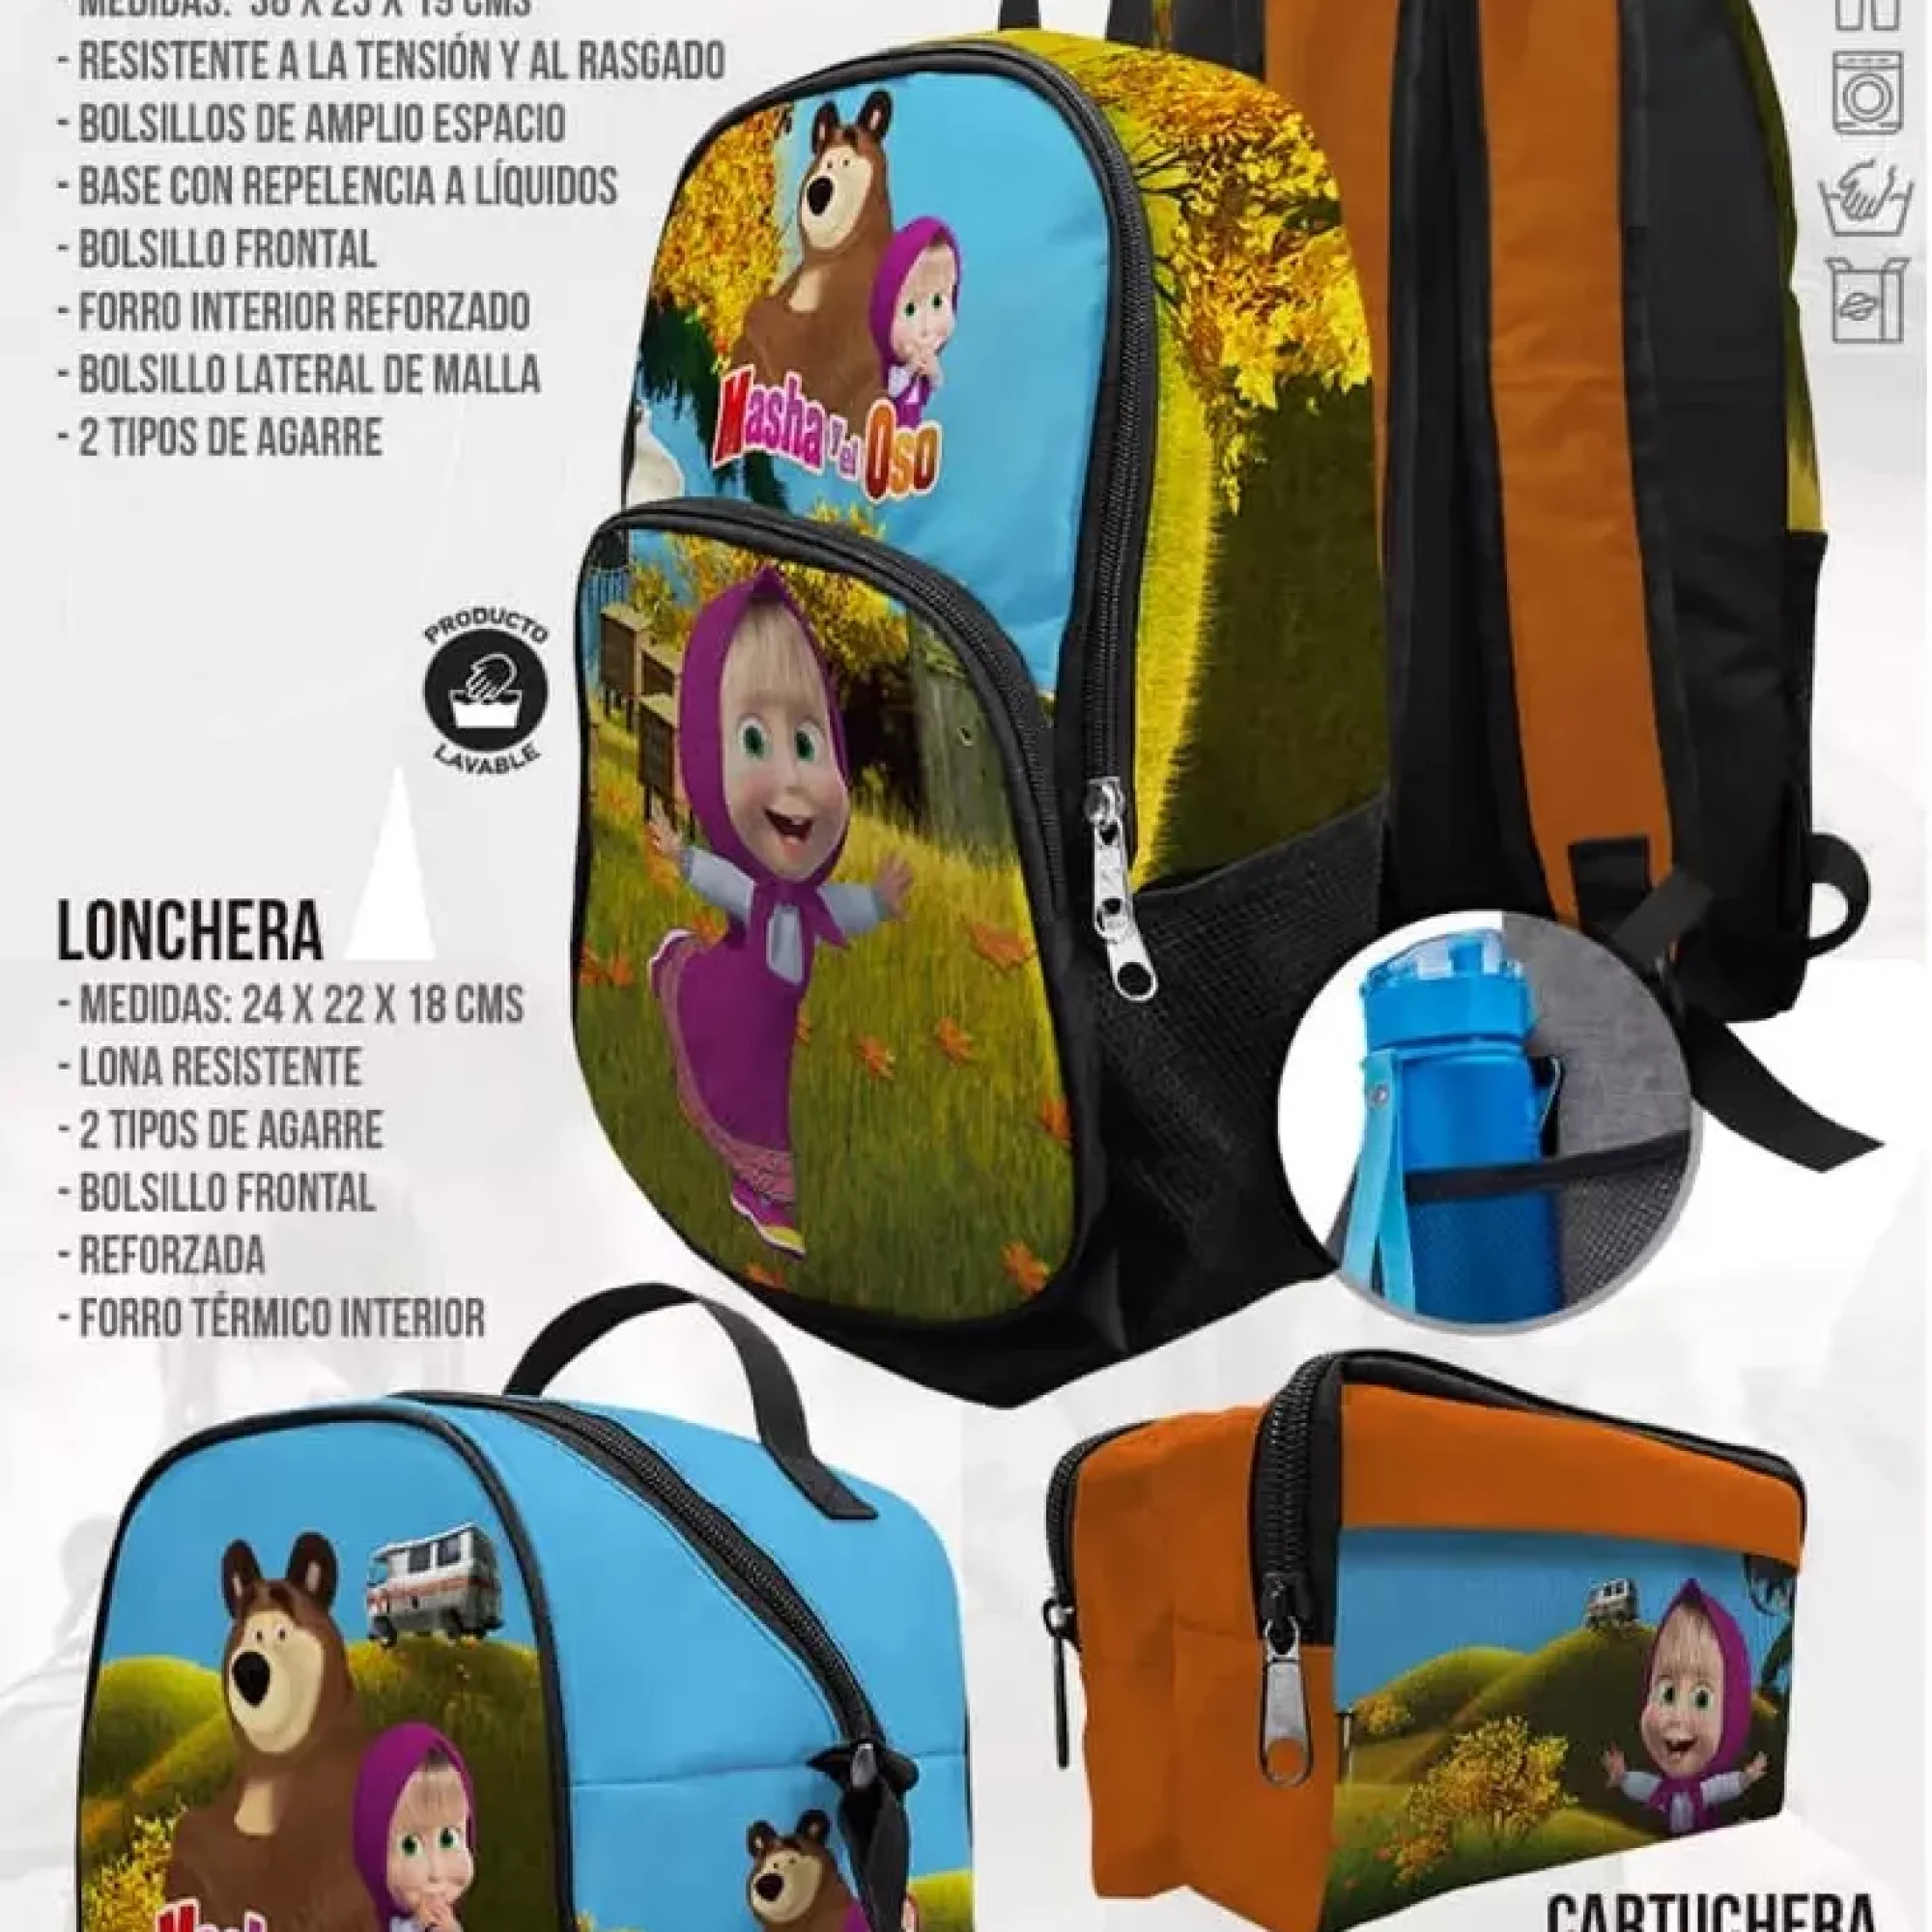 mochila-escolar-lonchera-Masha-y-el-Oso-mochilas-durables-temporada-escolar-como-kids